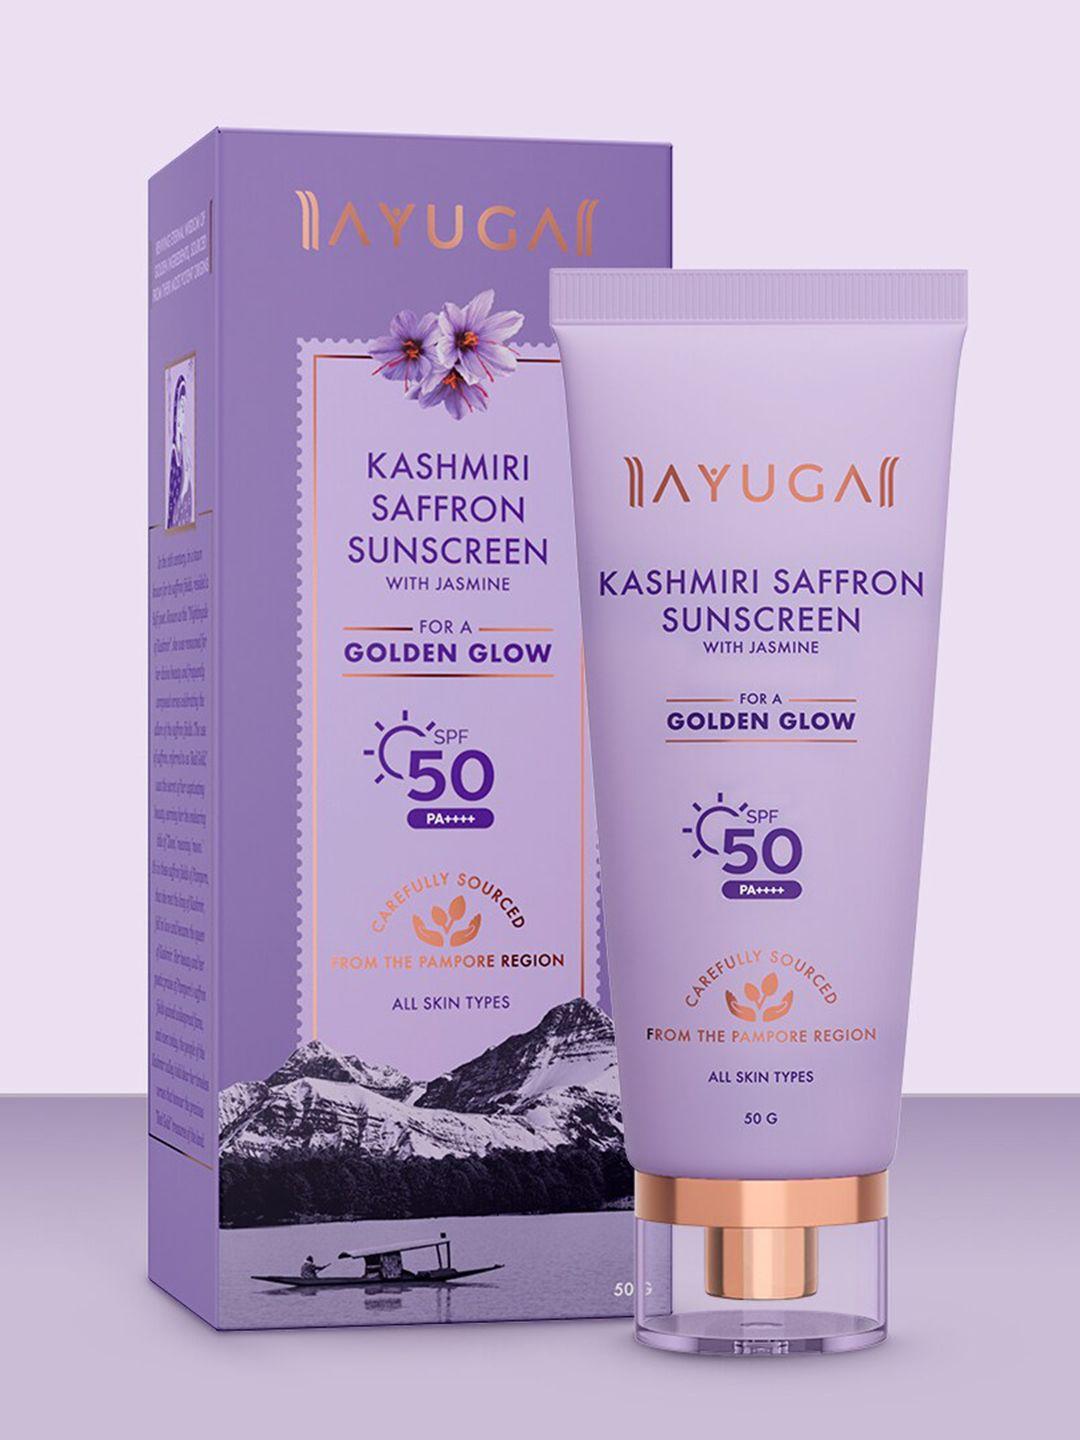 ayuga kashmiri saffron sunscreen spf 50 pa++++ with jasmine - 50g